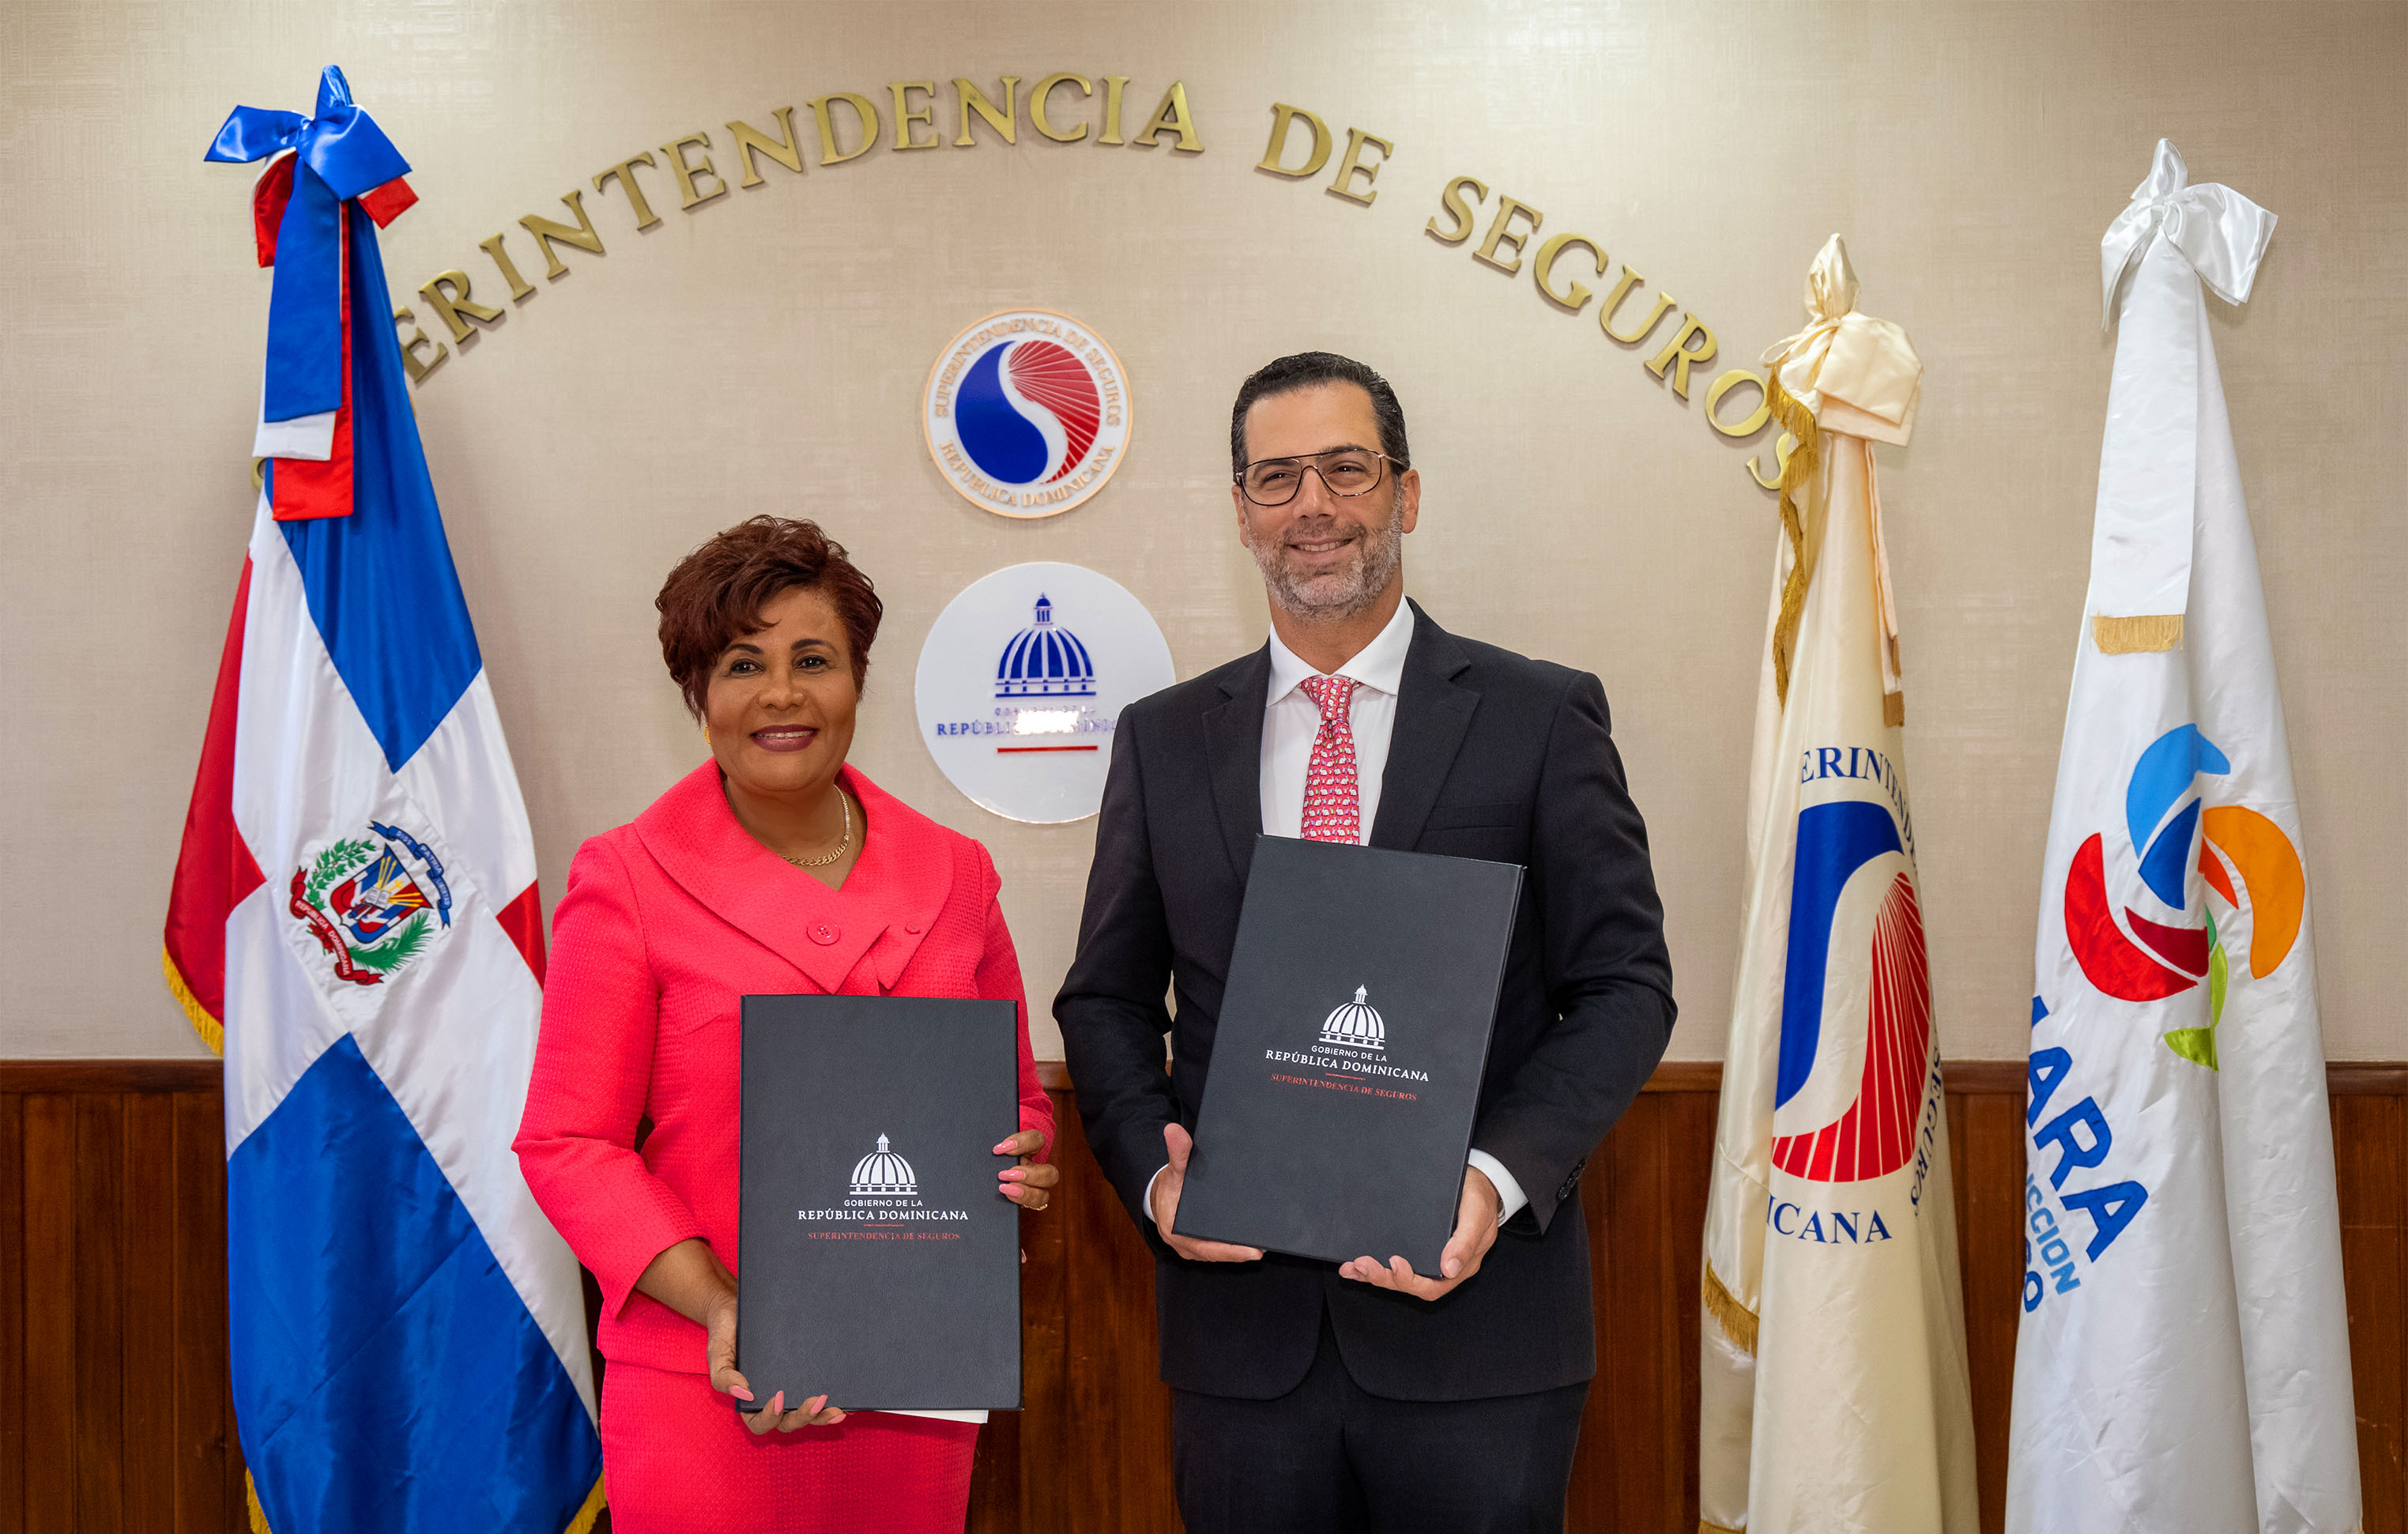 Superintendencia de Seguros - y Cámara de Comercio de Santo Domingo firman acuerdo de colaboración